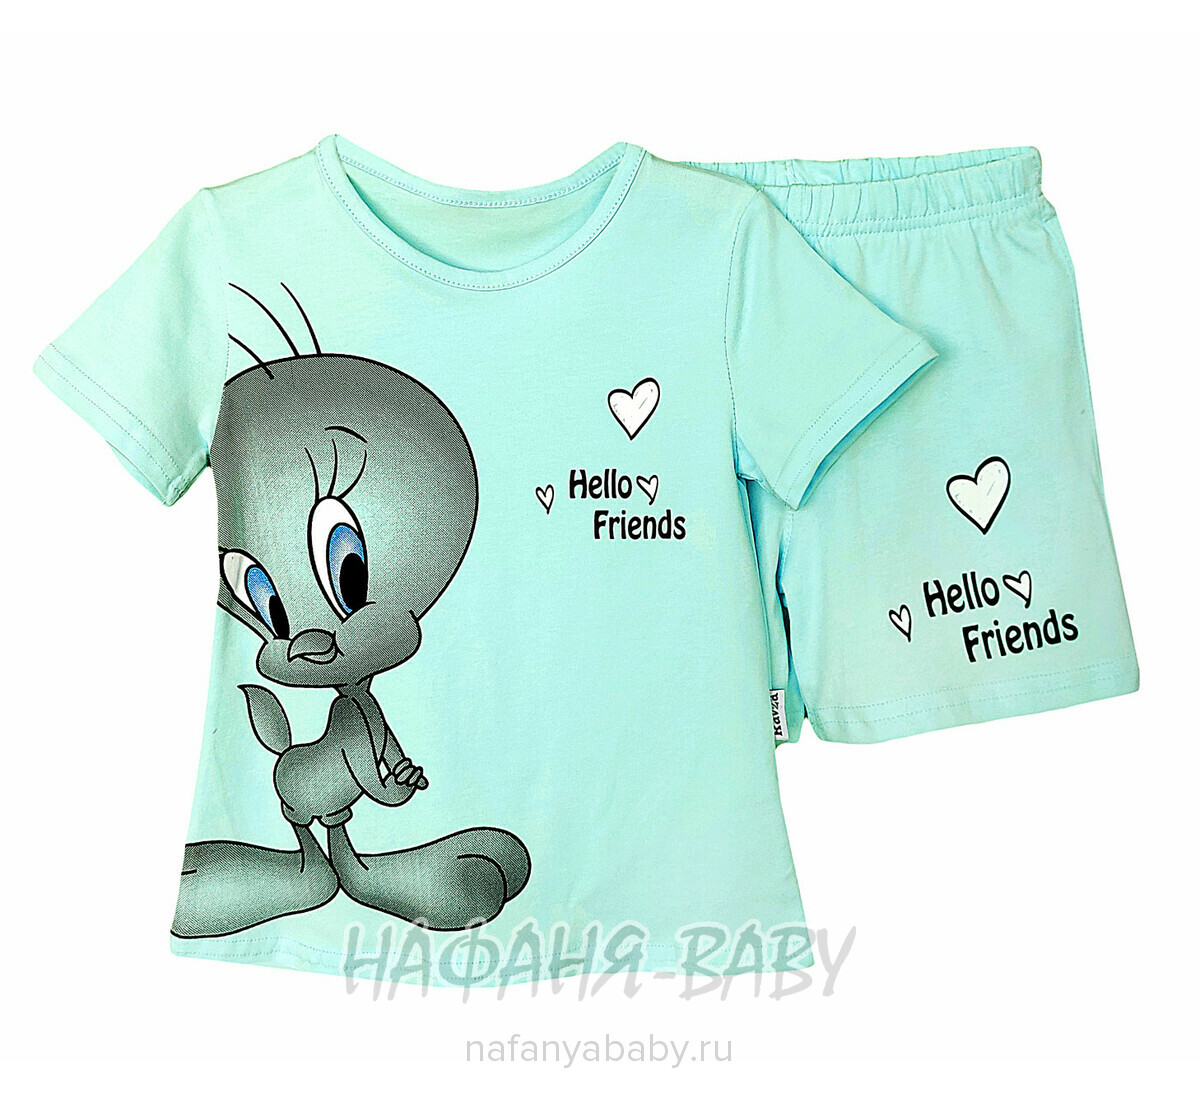 Детский костюм (футболка + шорты) RAVZA арт: 36111, 3-6 лет, цвет аквамариновый, оптом Турция